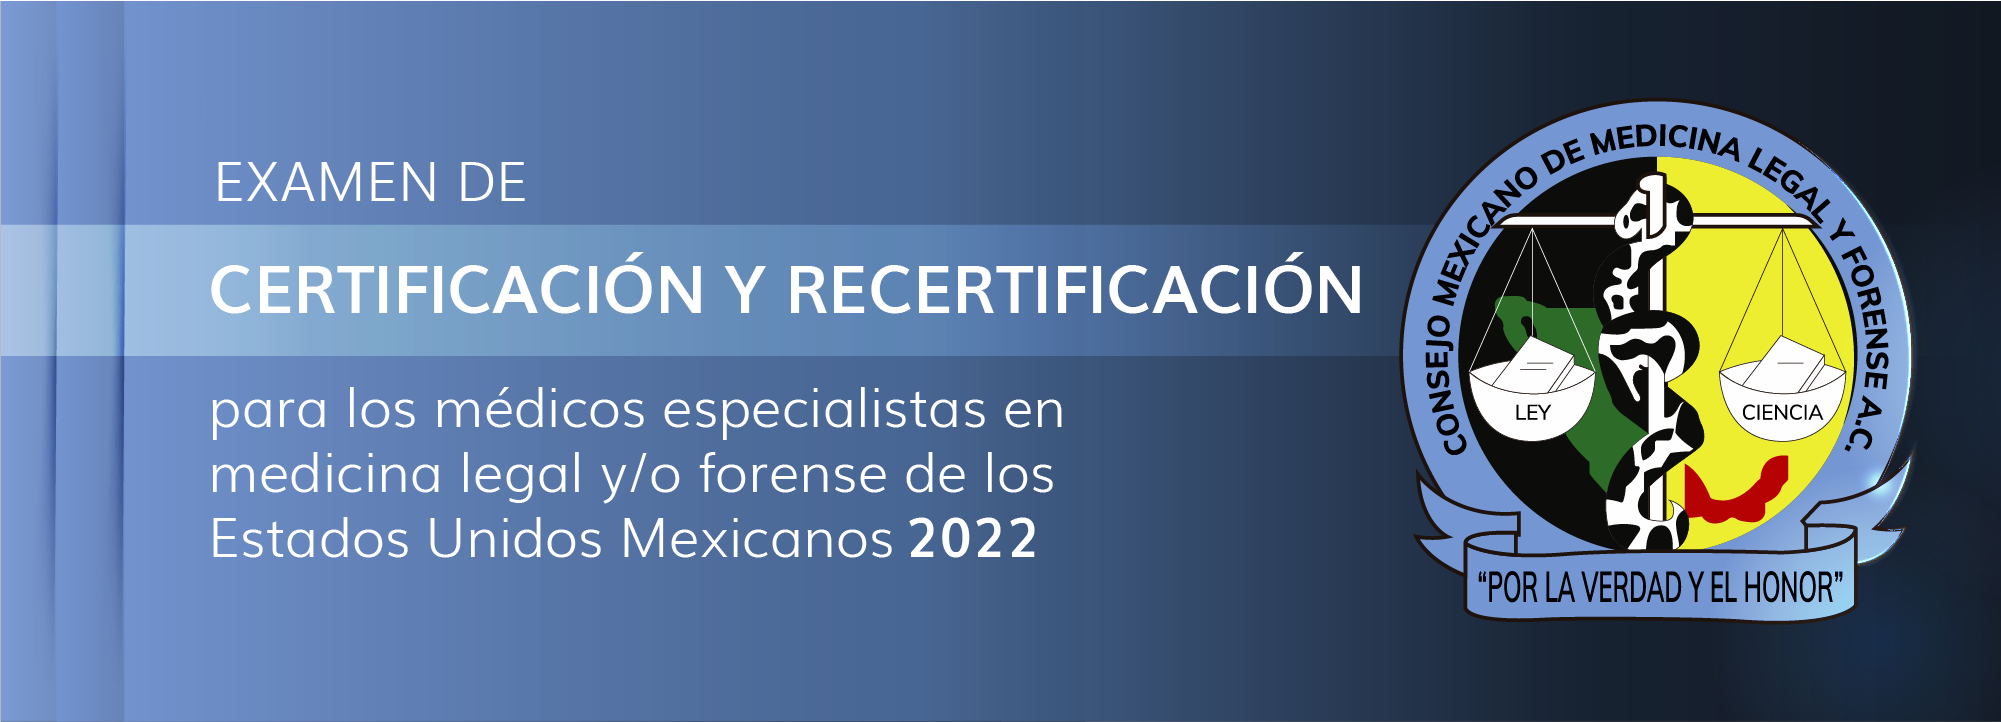 Examen de certificación y recertificación - Mayo 2022 MedForense-00001